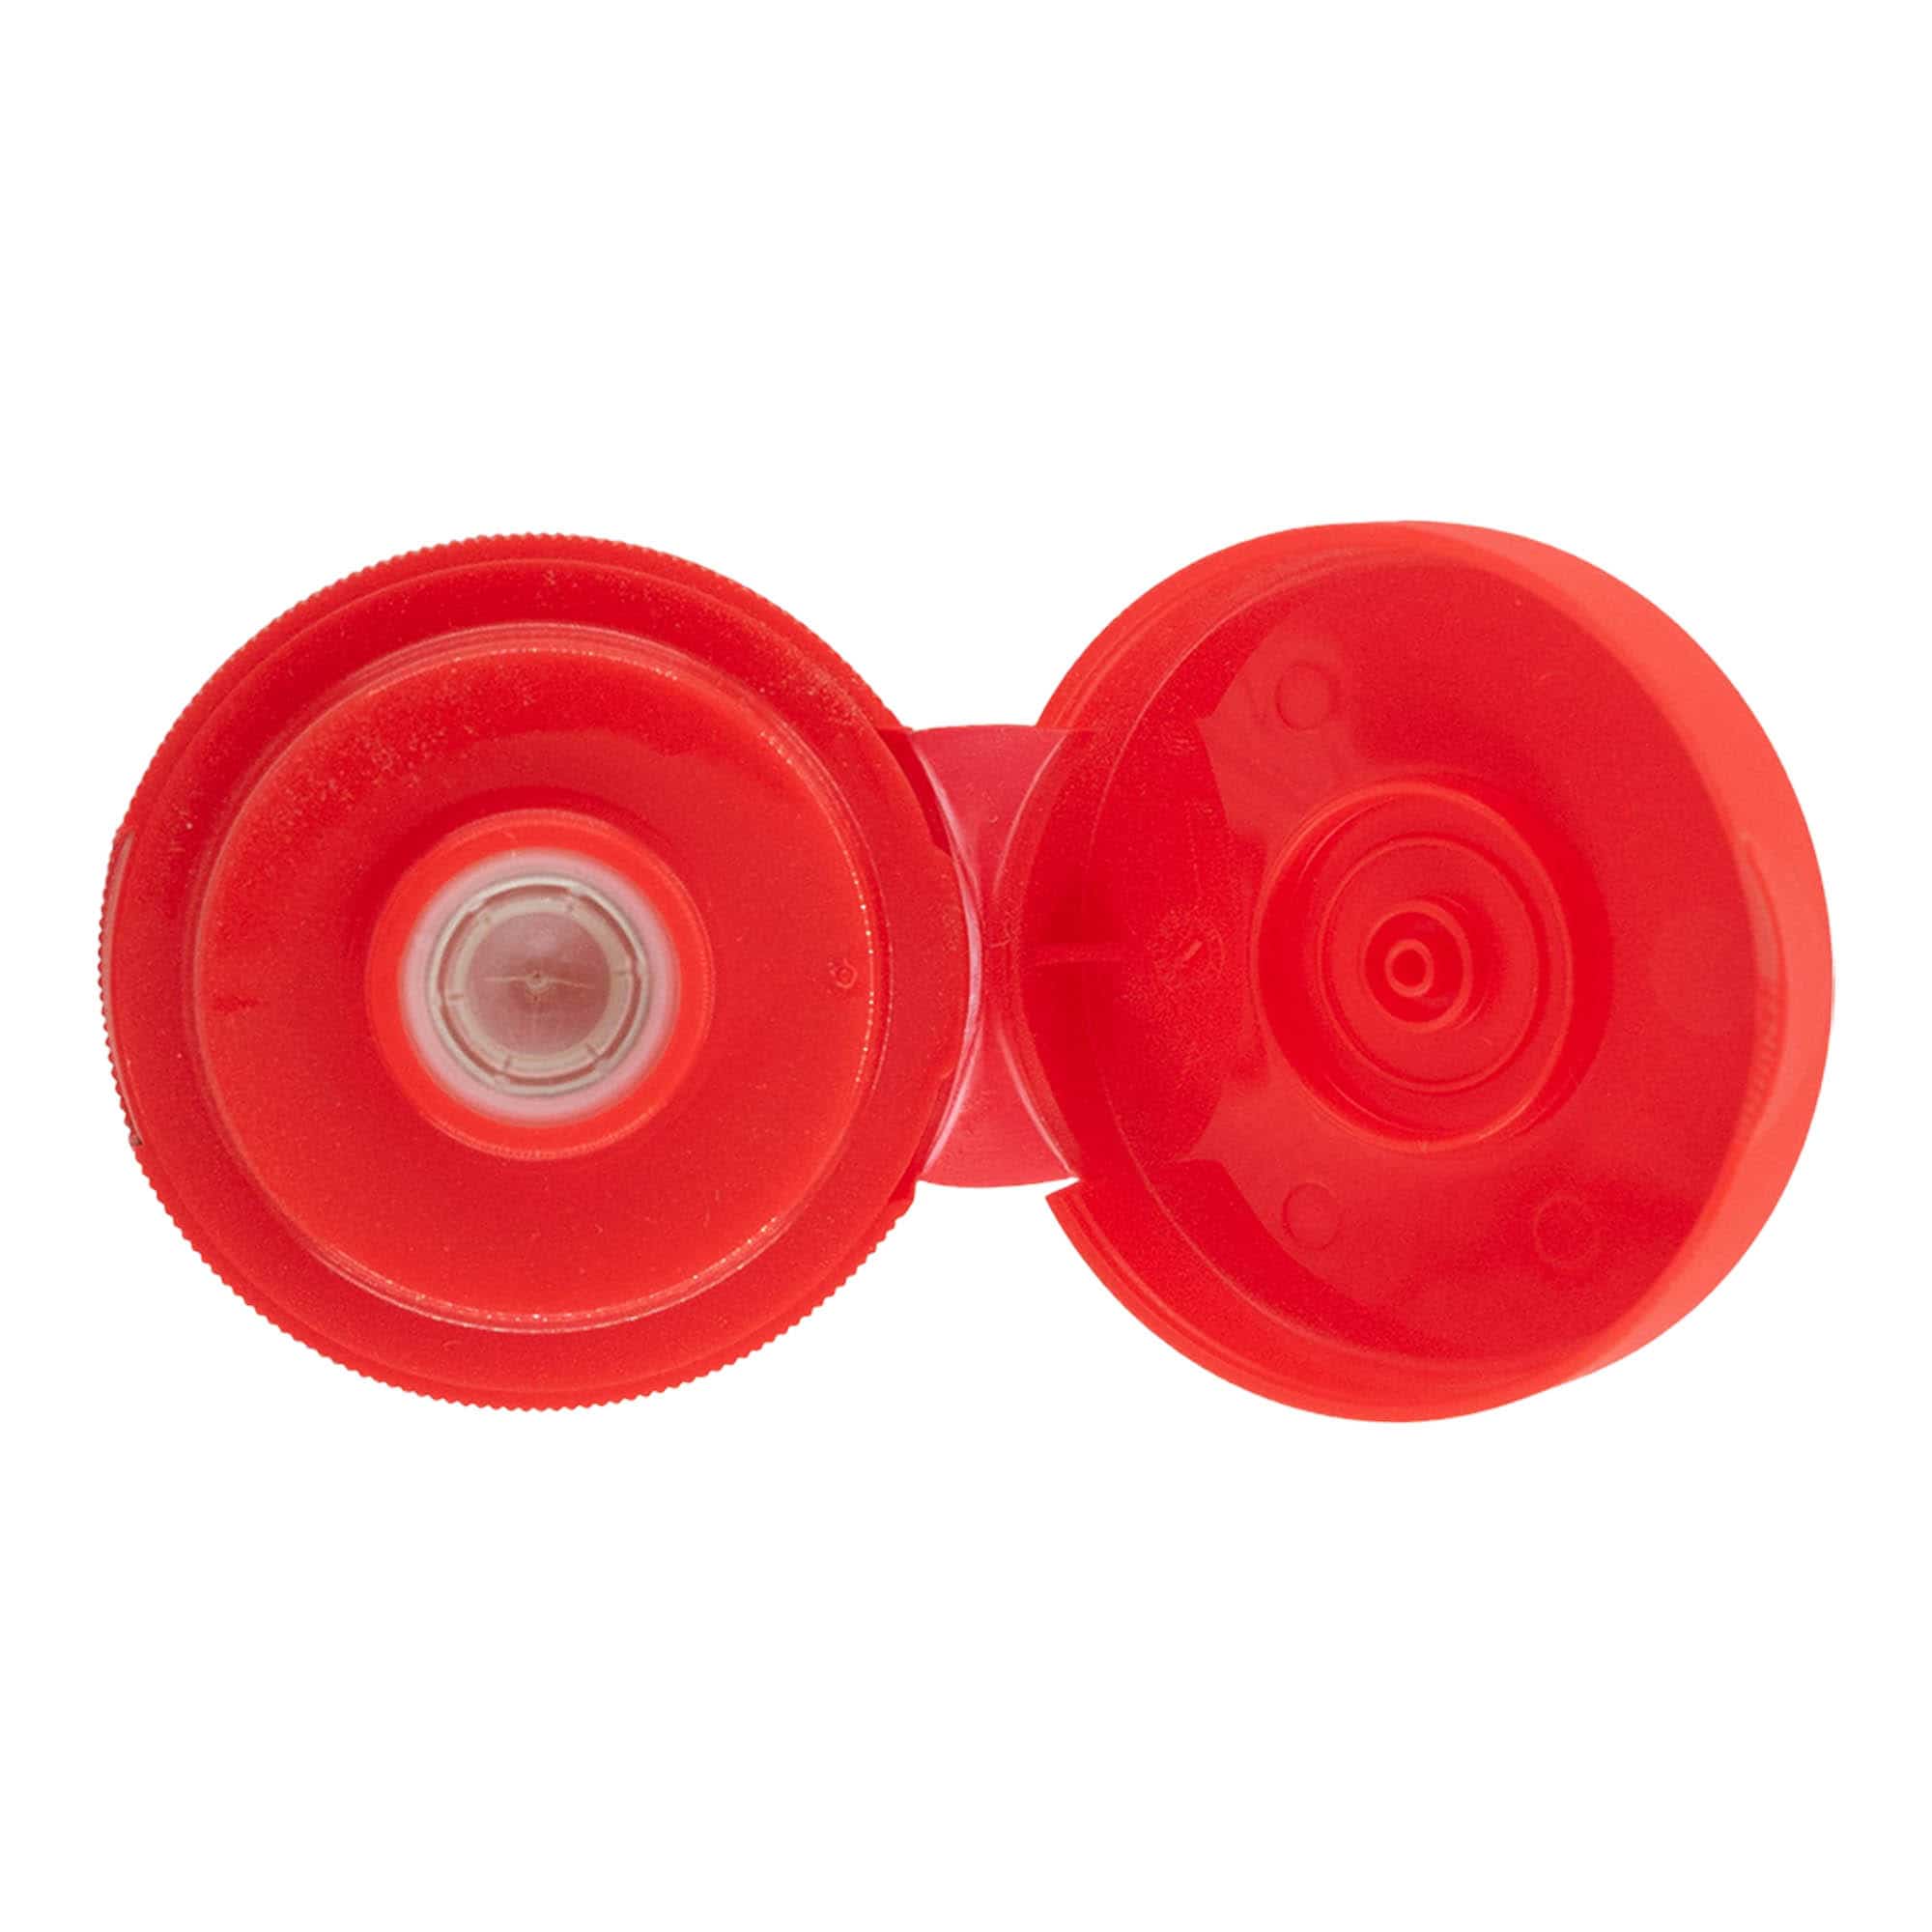 Šroubovací uzávěr s výklopnou krytkou, plast PP, červený, pro ústí: GPI 38/400